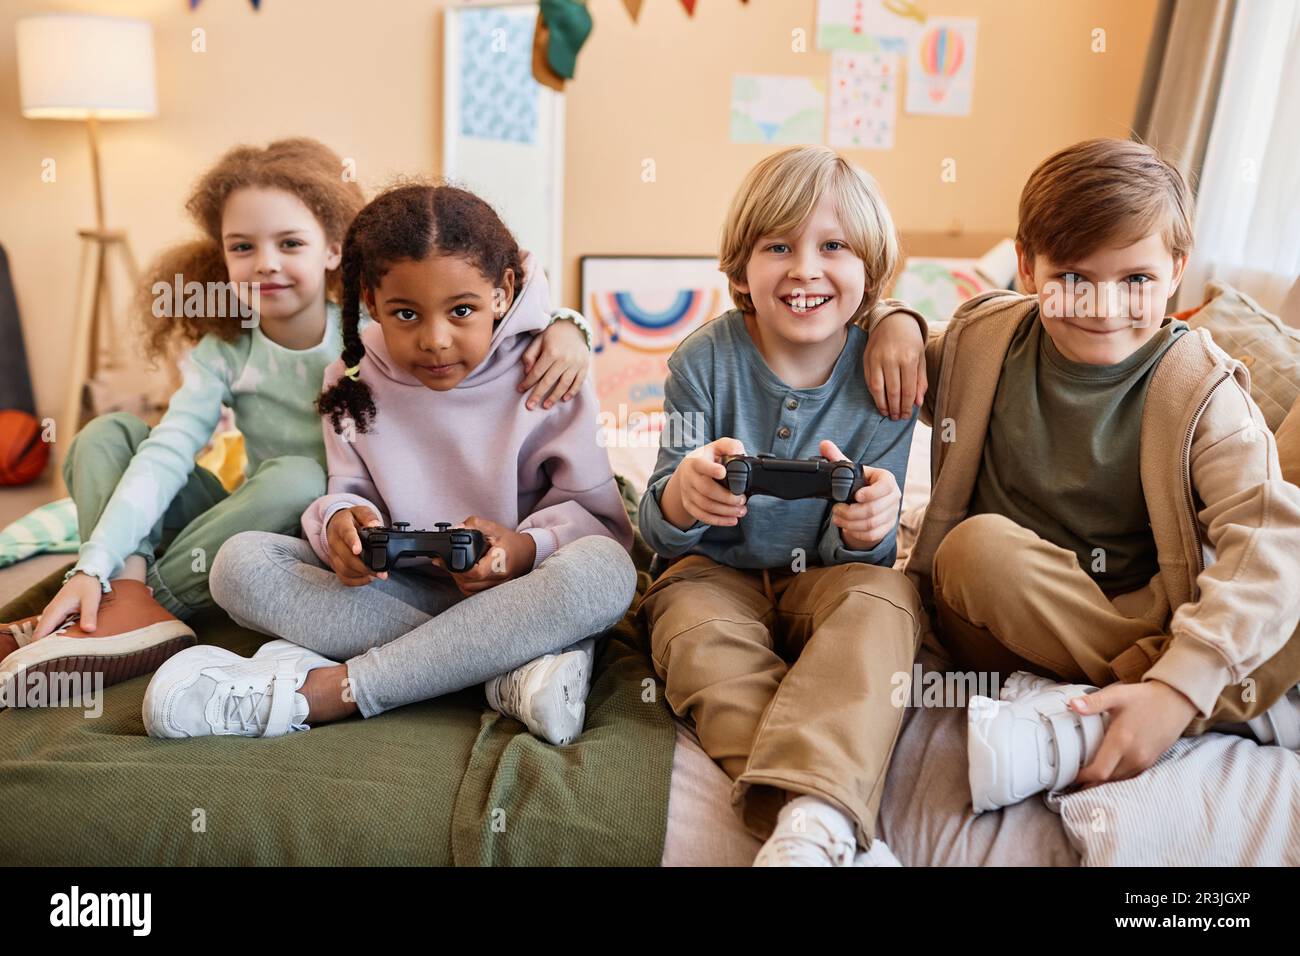 Vielfältige Gruppe glücklicher kleiner Kinder, die zusammen Videospiele spielen und Spaß haben Stockfoto